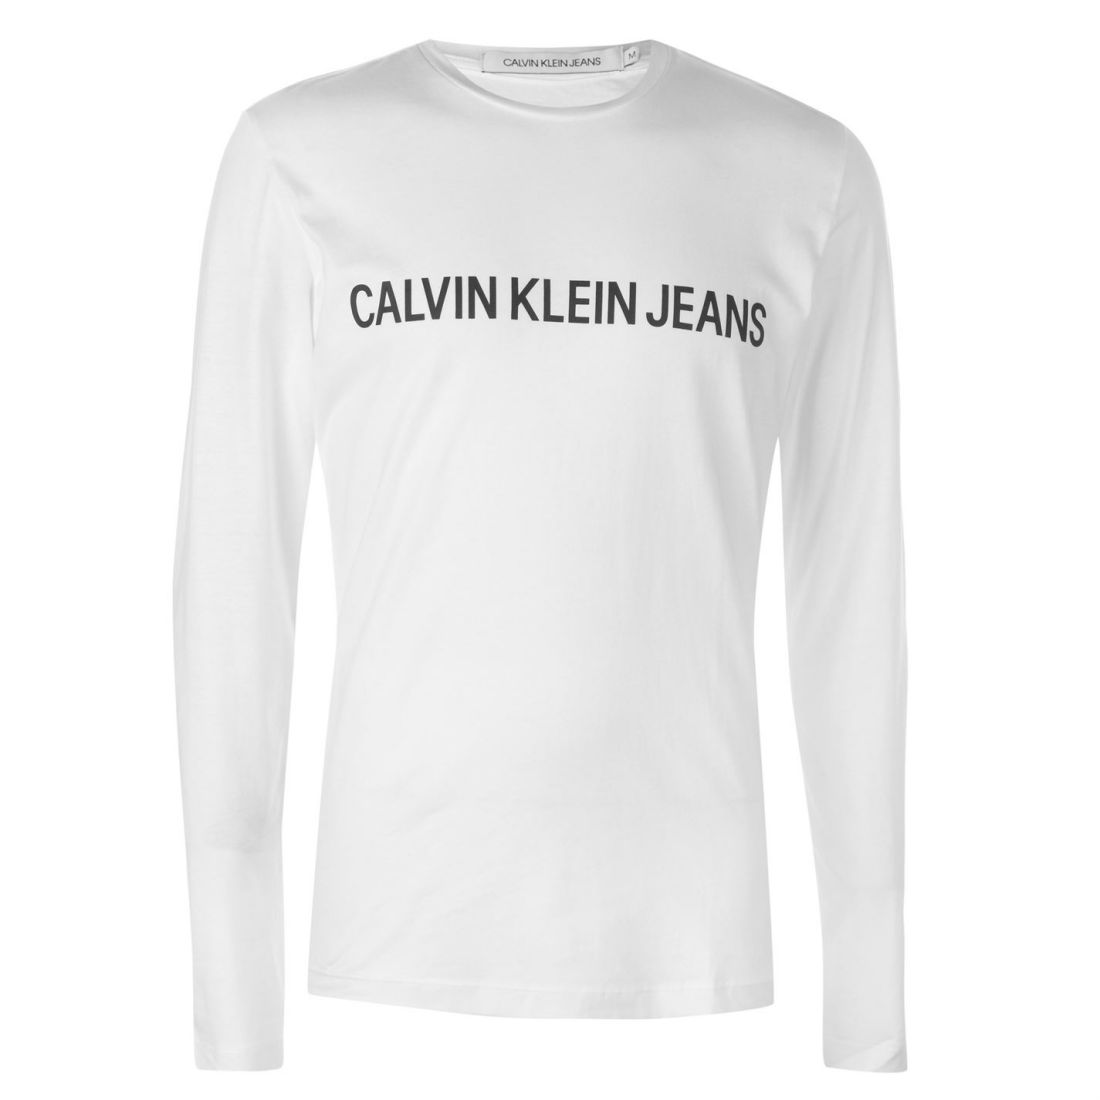 calvin klein t shirt full sleeve